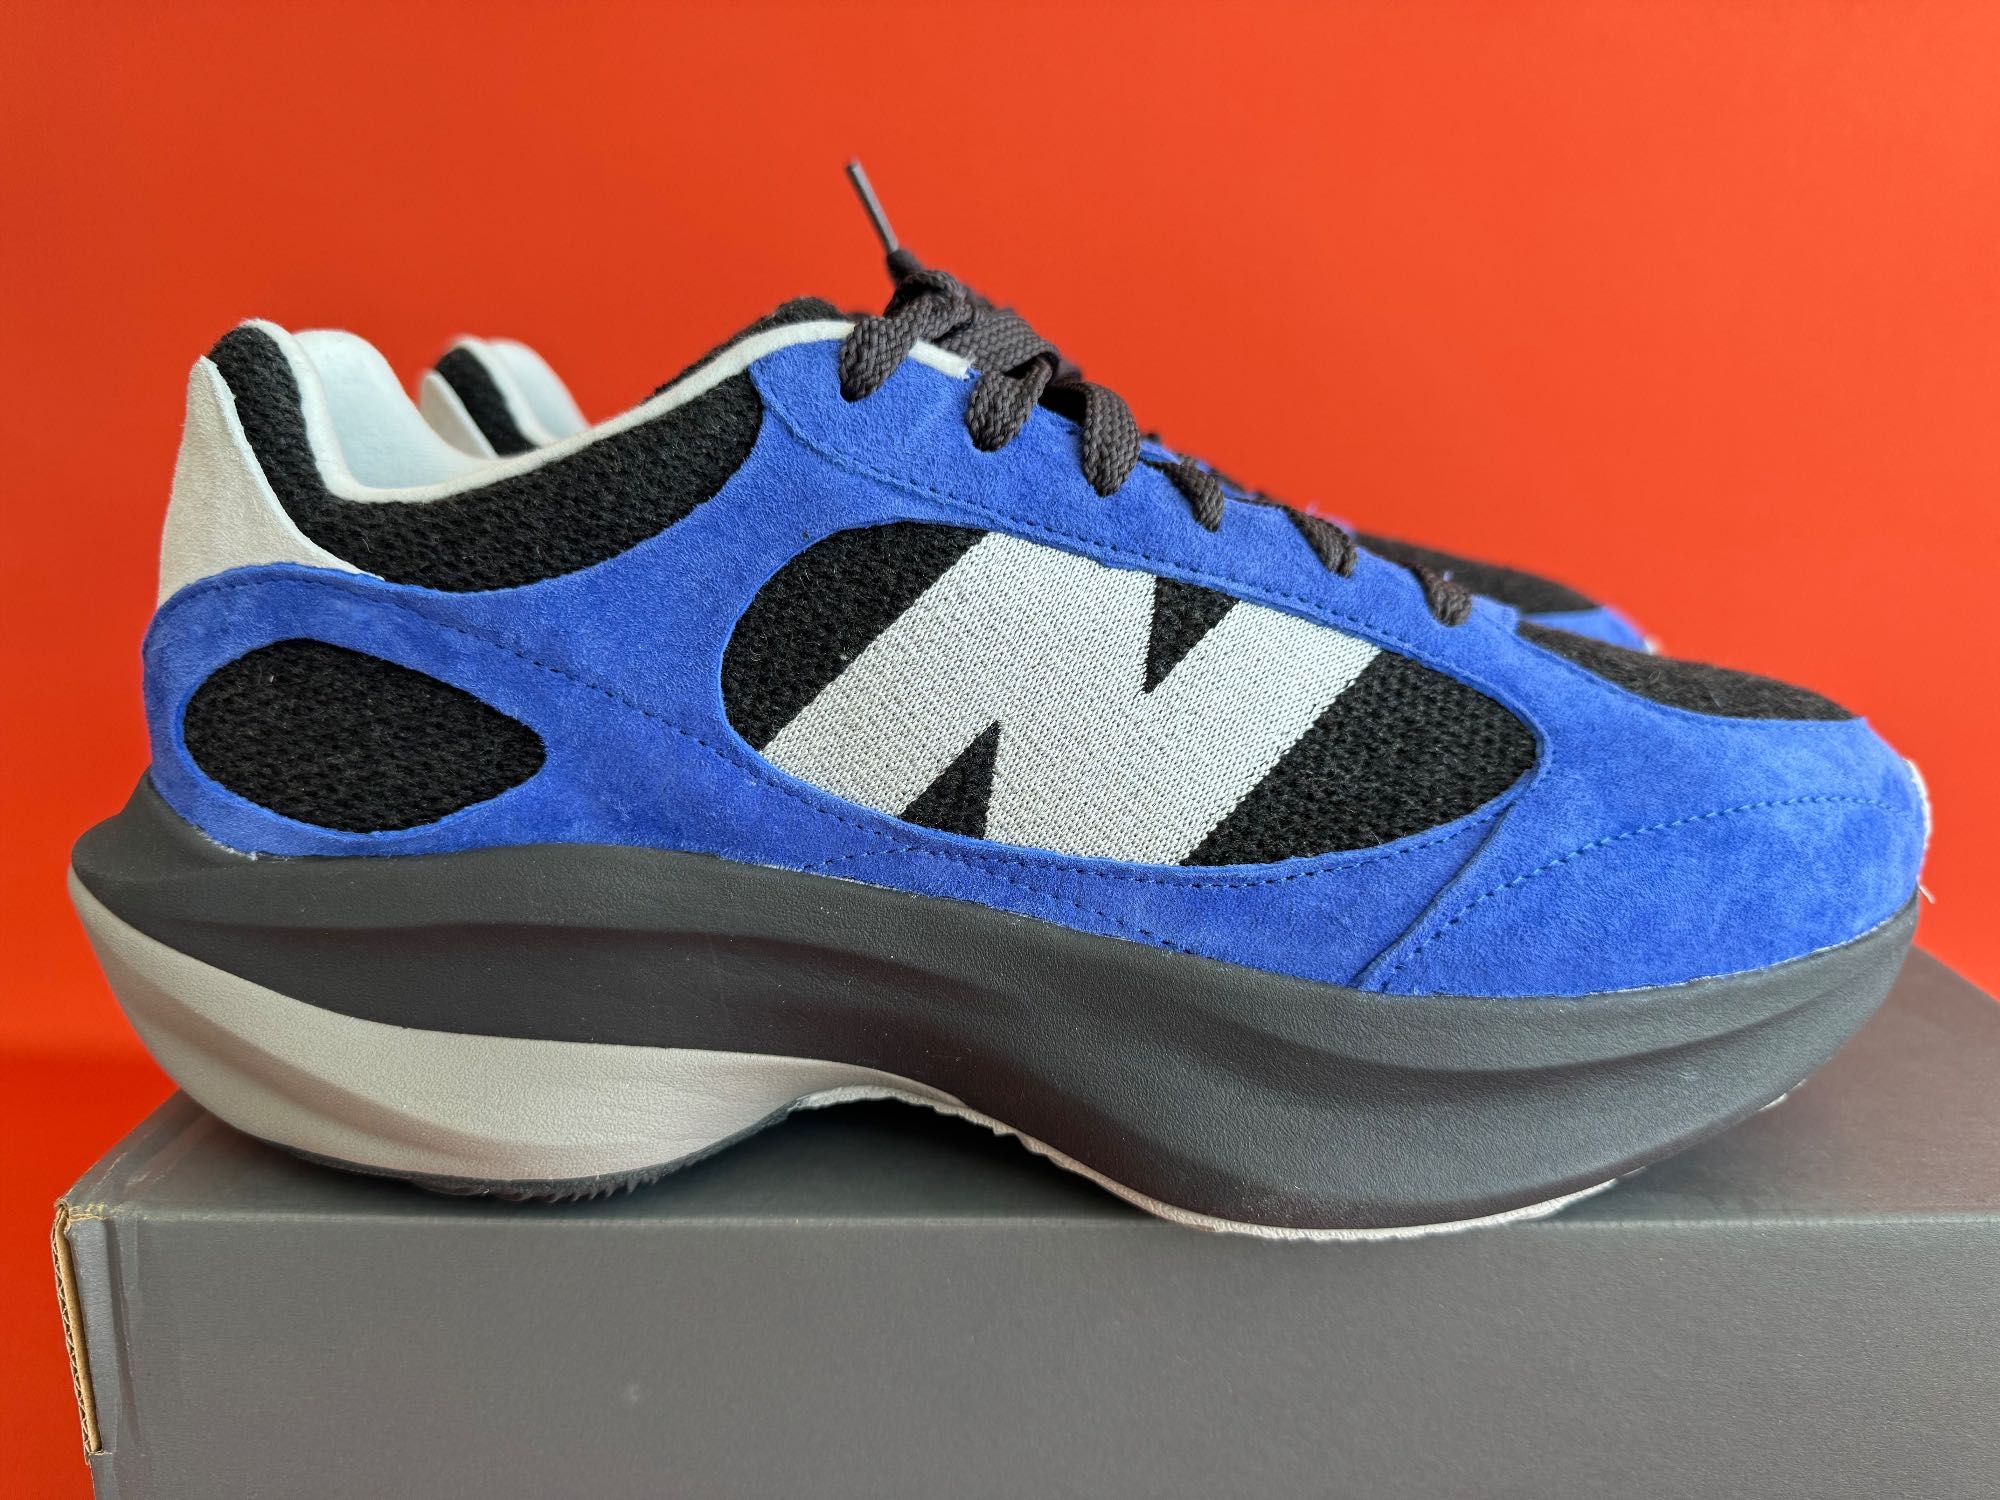 New Balance WRPD Runner оригинал мужские кроссовки размер 45 us11 NEW